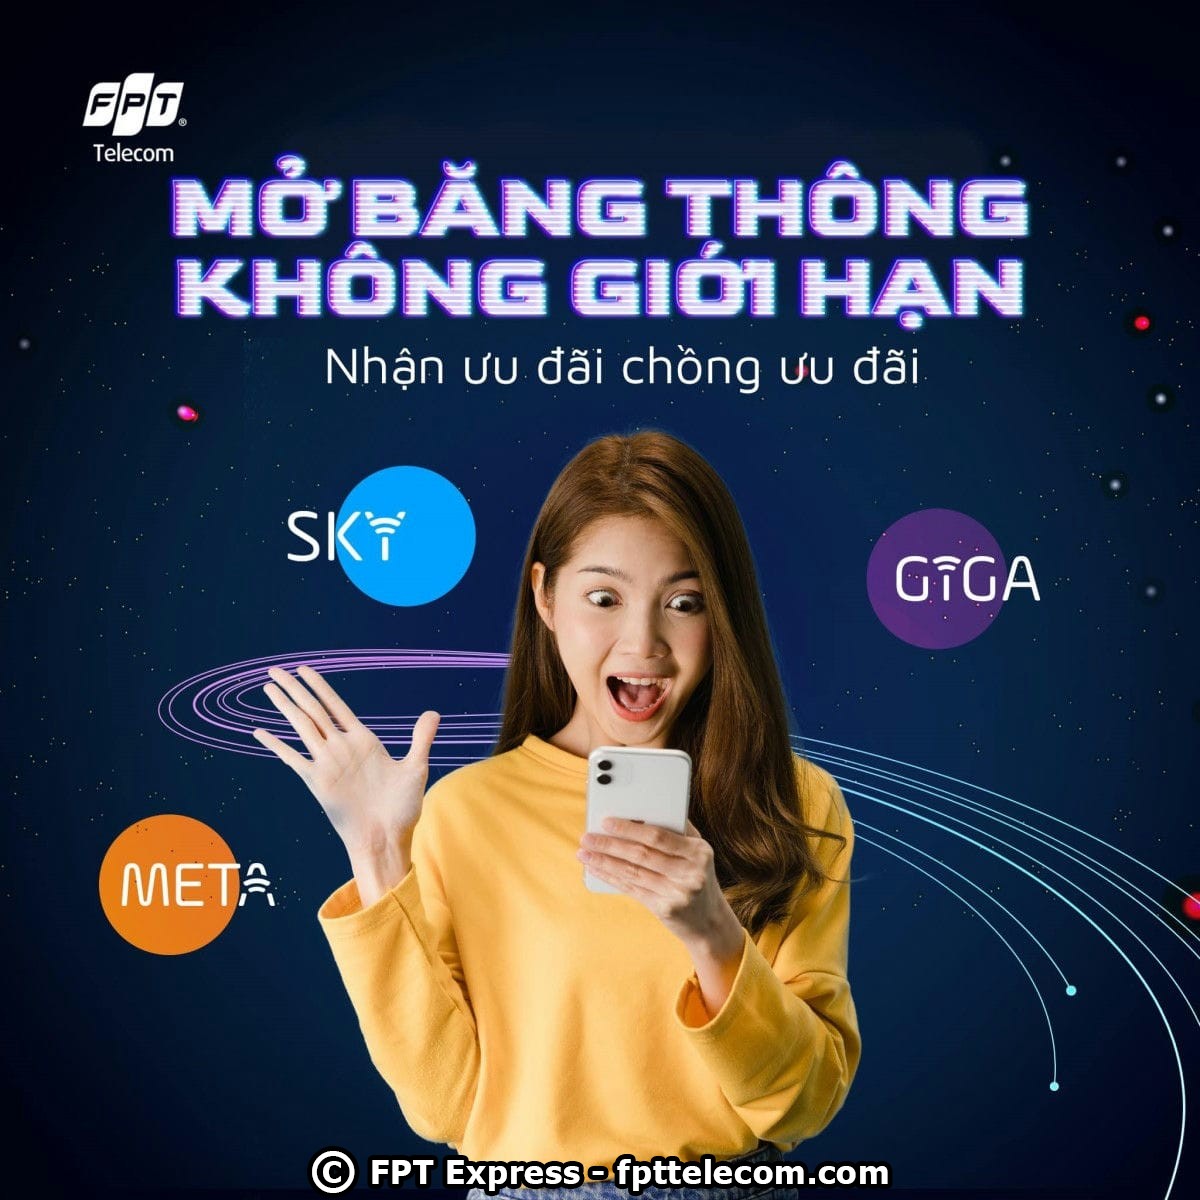 FPT Bắc Ninh vừa tung ra 3 gói cước internet không giới hạn là Giga, Sky và Meta